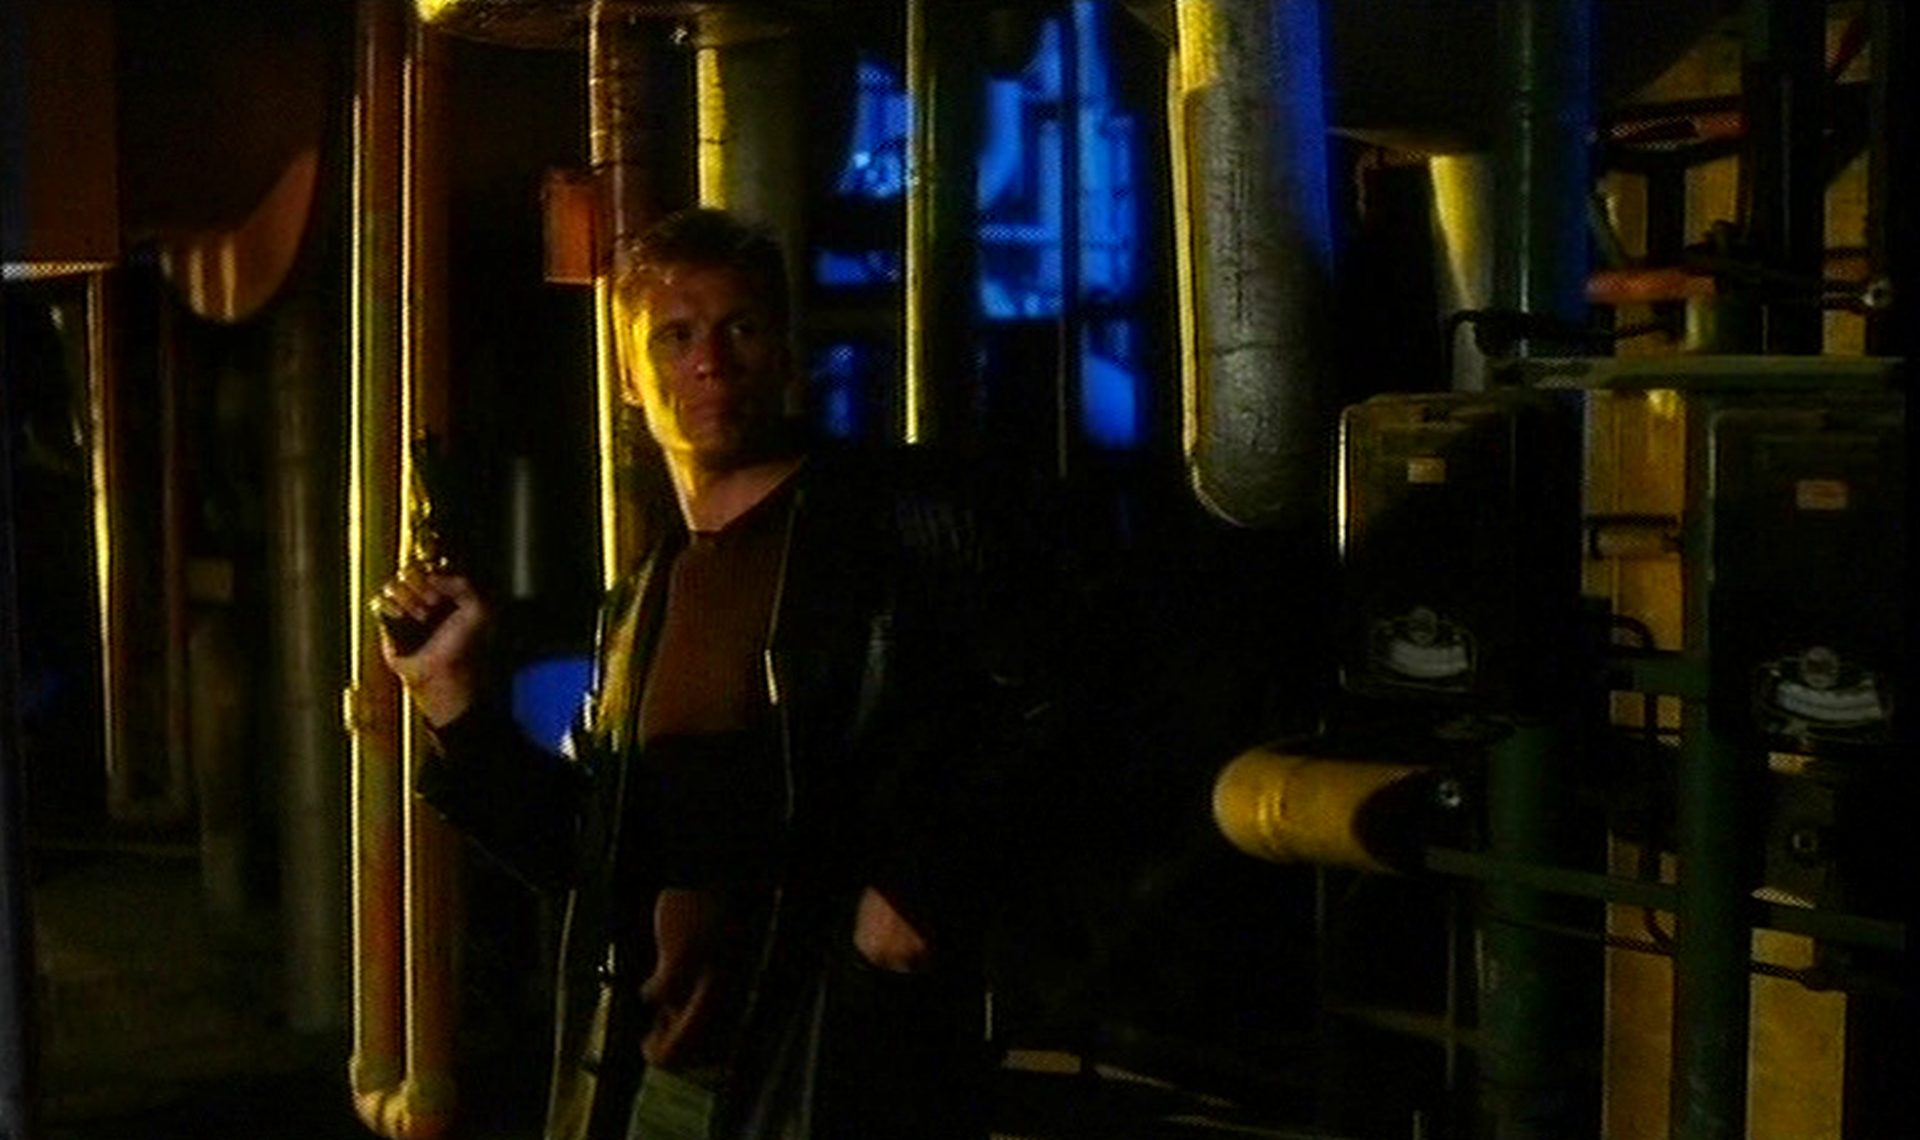 Dolph Lundgren mit Pistole in wachsamer Haltung in maschineller Umgebung im U-Boot.